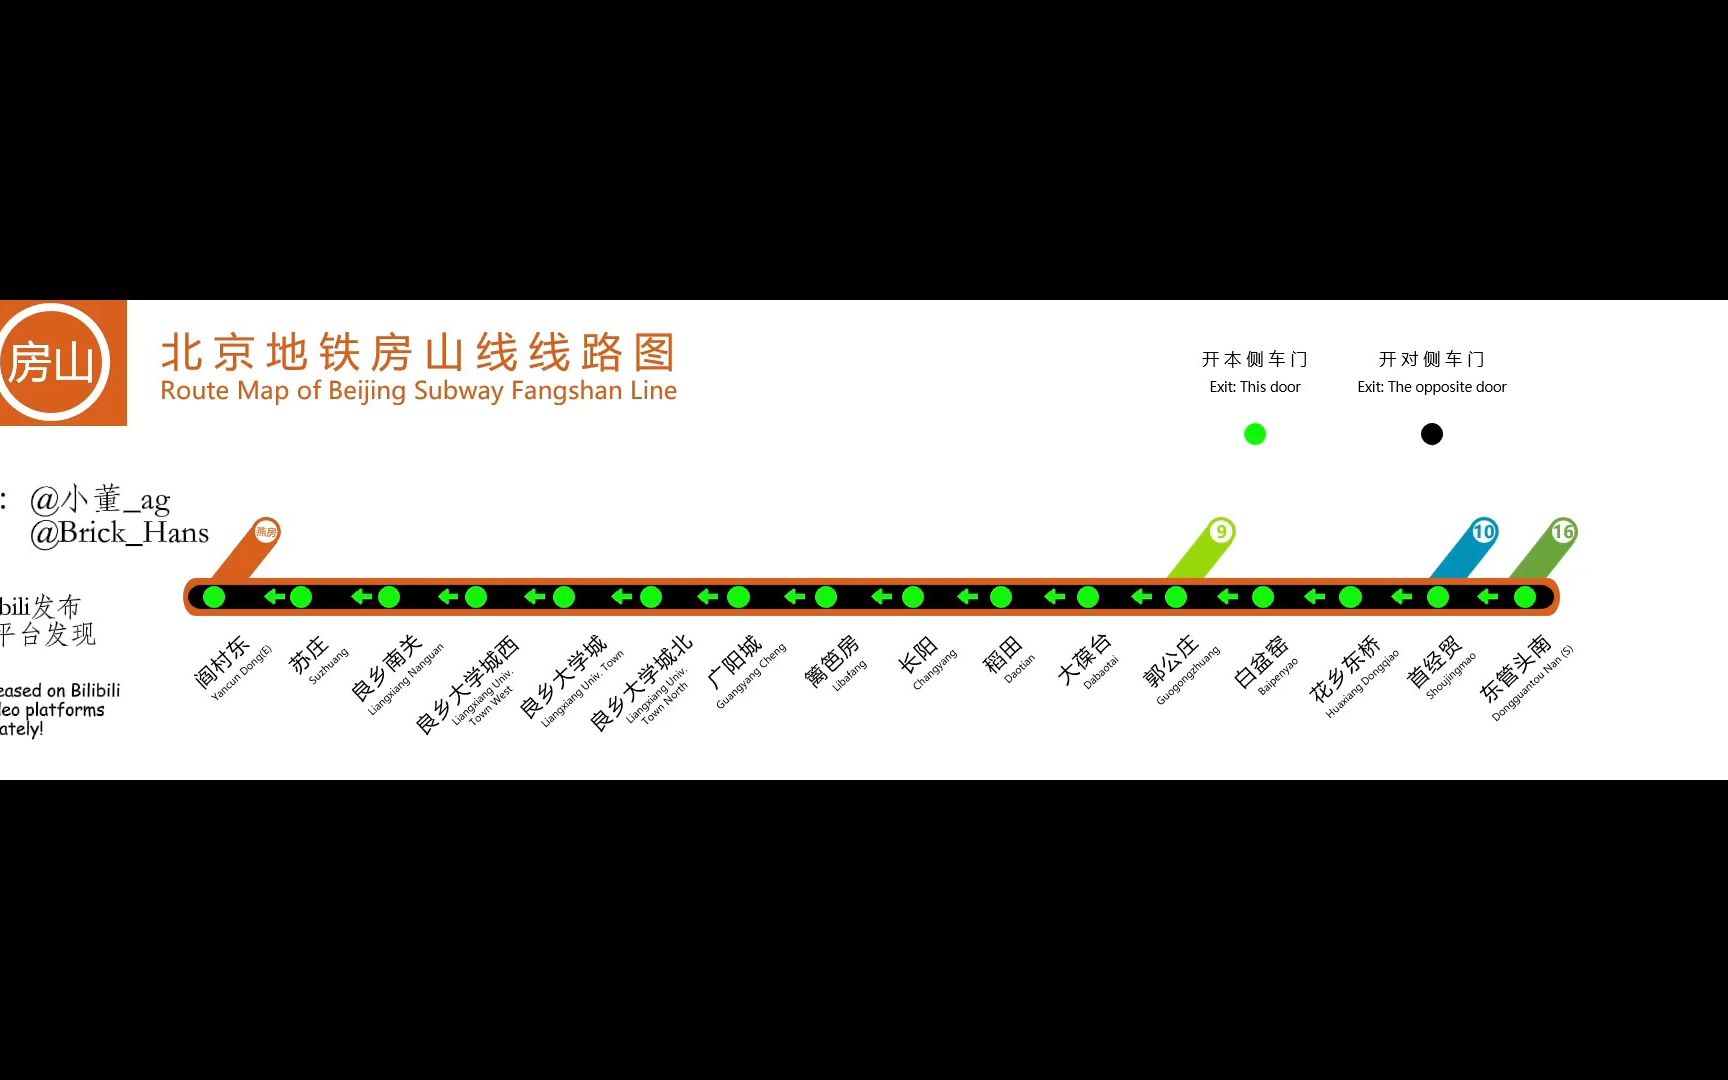 【北京地铁闪灯图】北京地铁房山线闪灯图 报站 闪灯图 东管头南